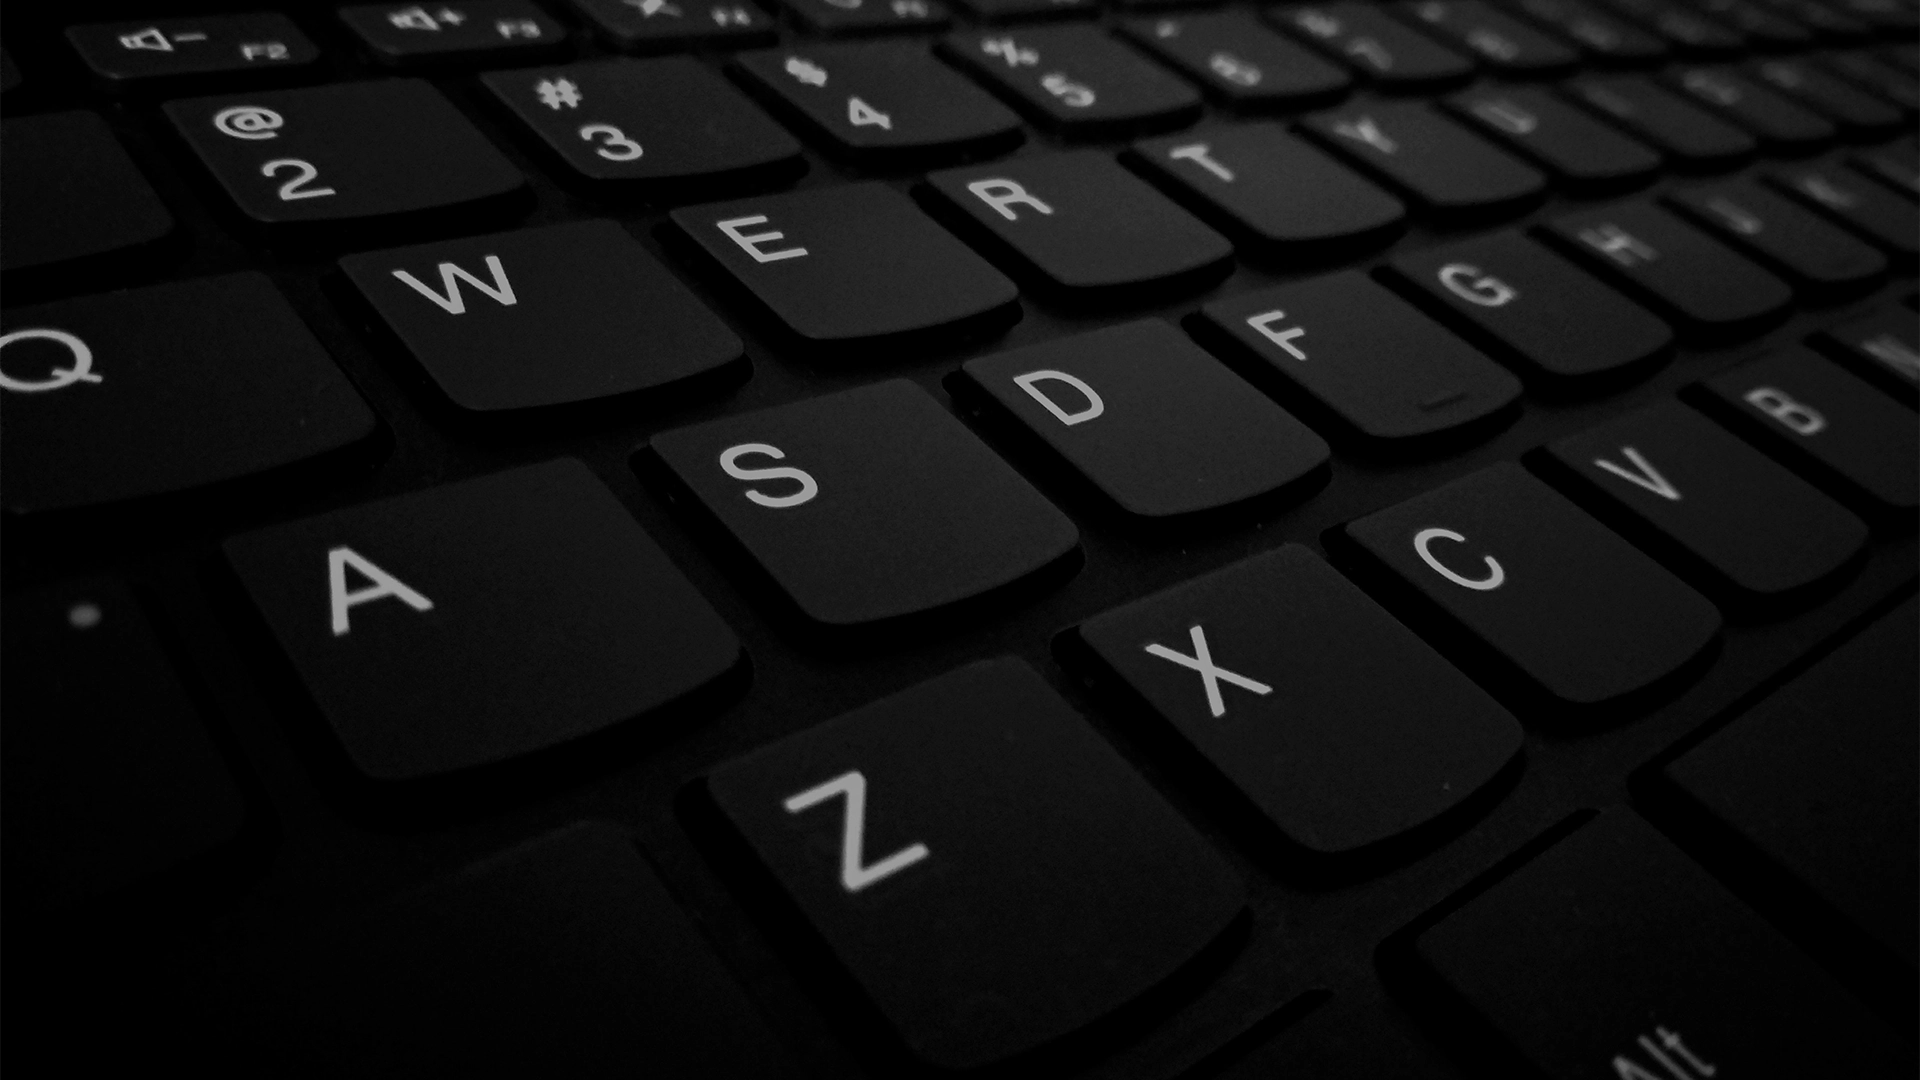 Imagem de um teclado de computador